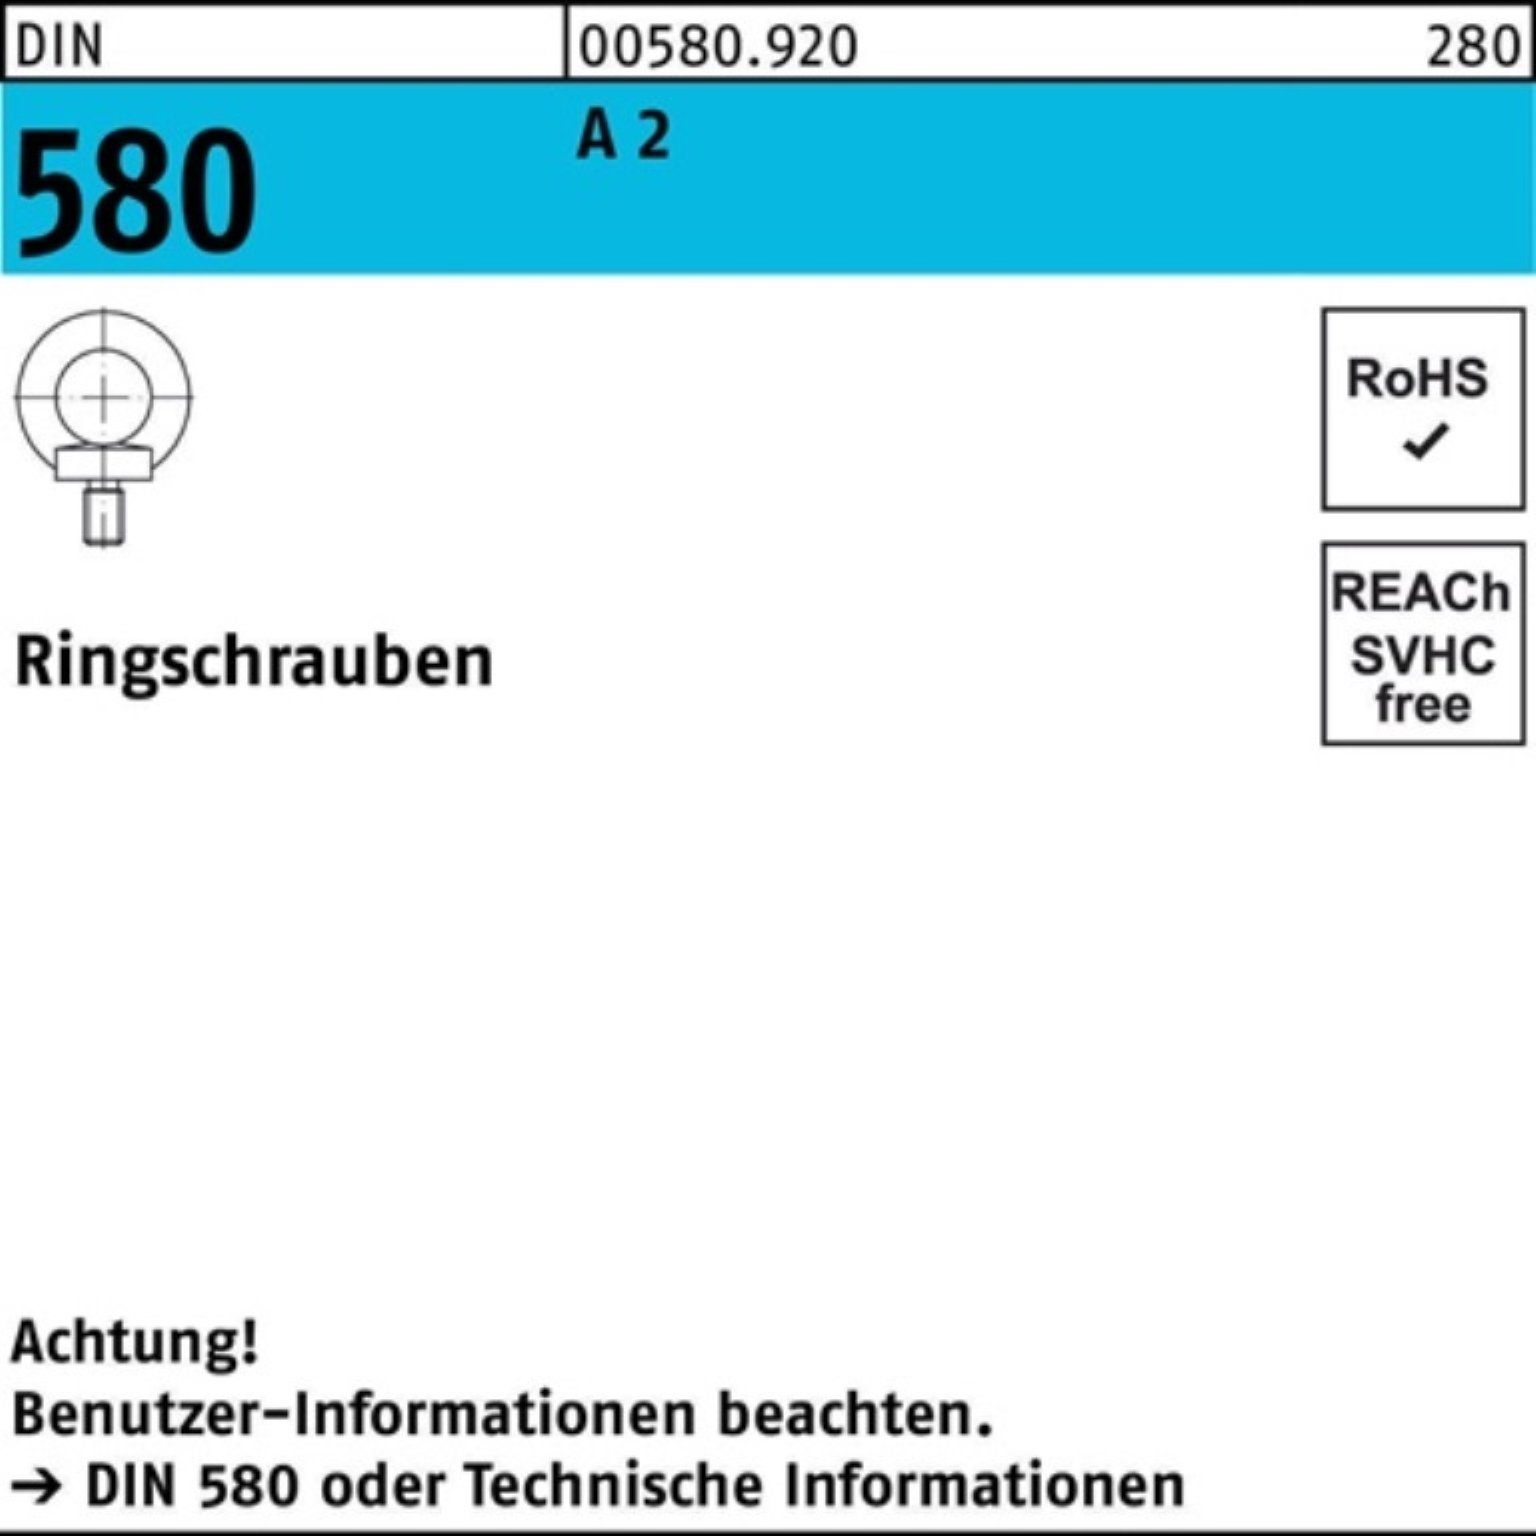 Reyher Schraube 100er Pack Ringschraube DIN 580 M24 A 2 1 Stück DIN 580 A 2 Ringschra | Schrauben